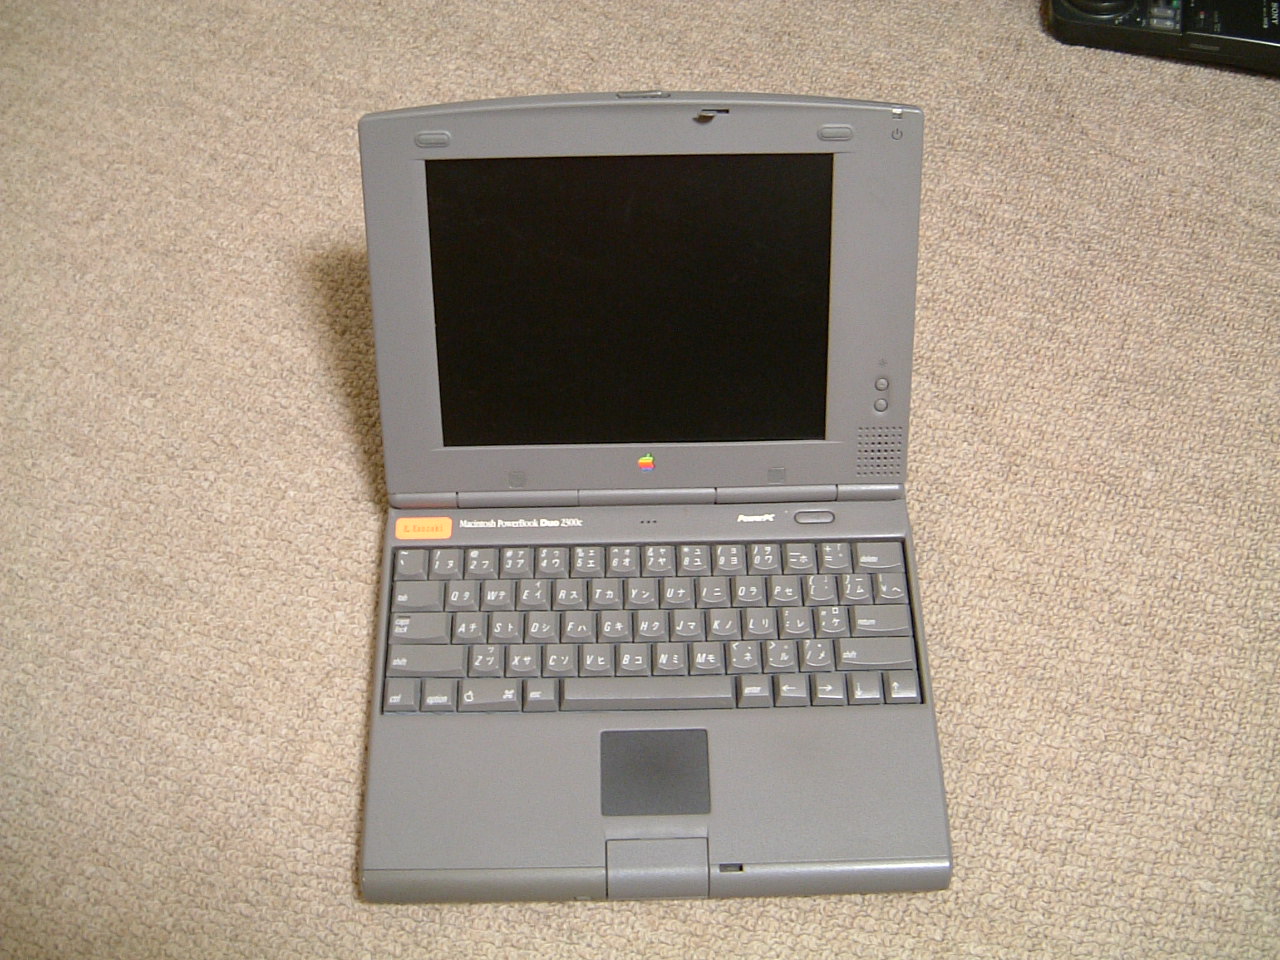 Macintosh PowerBookDuo 2300C